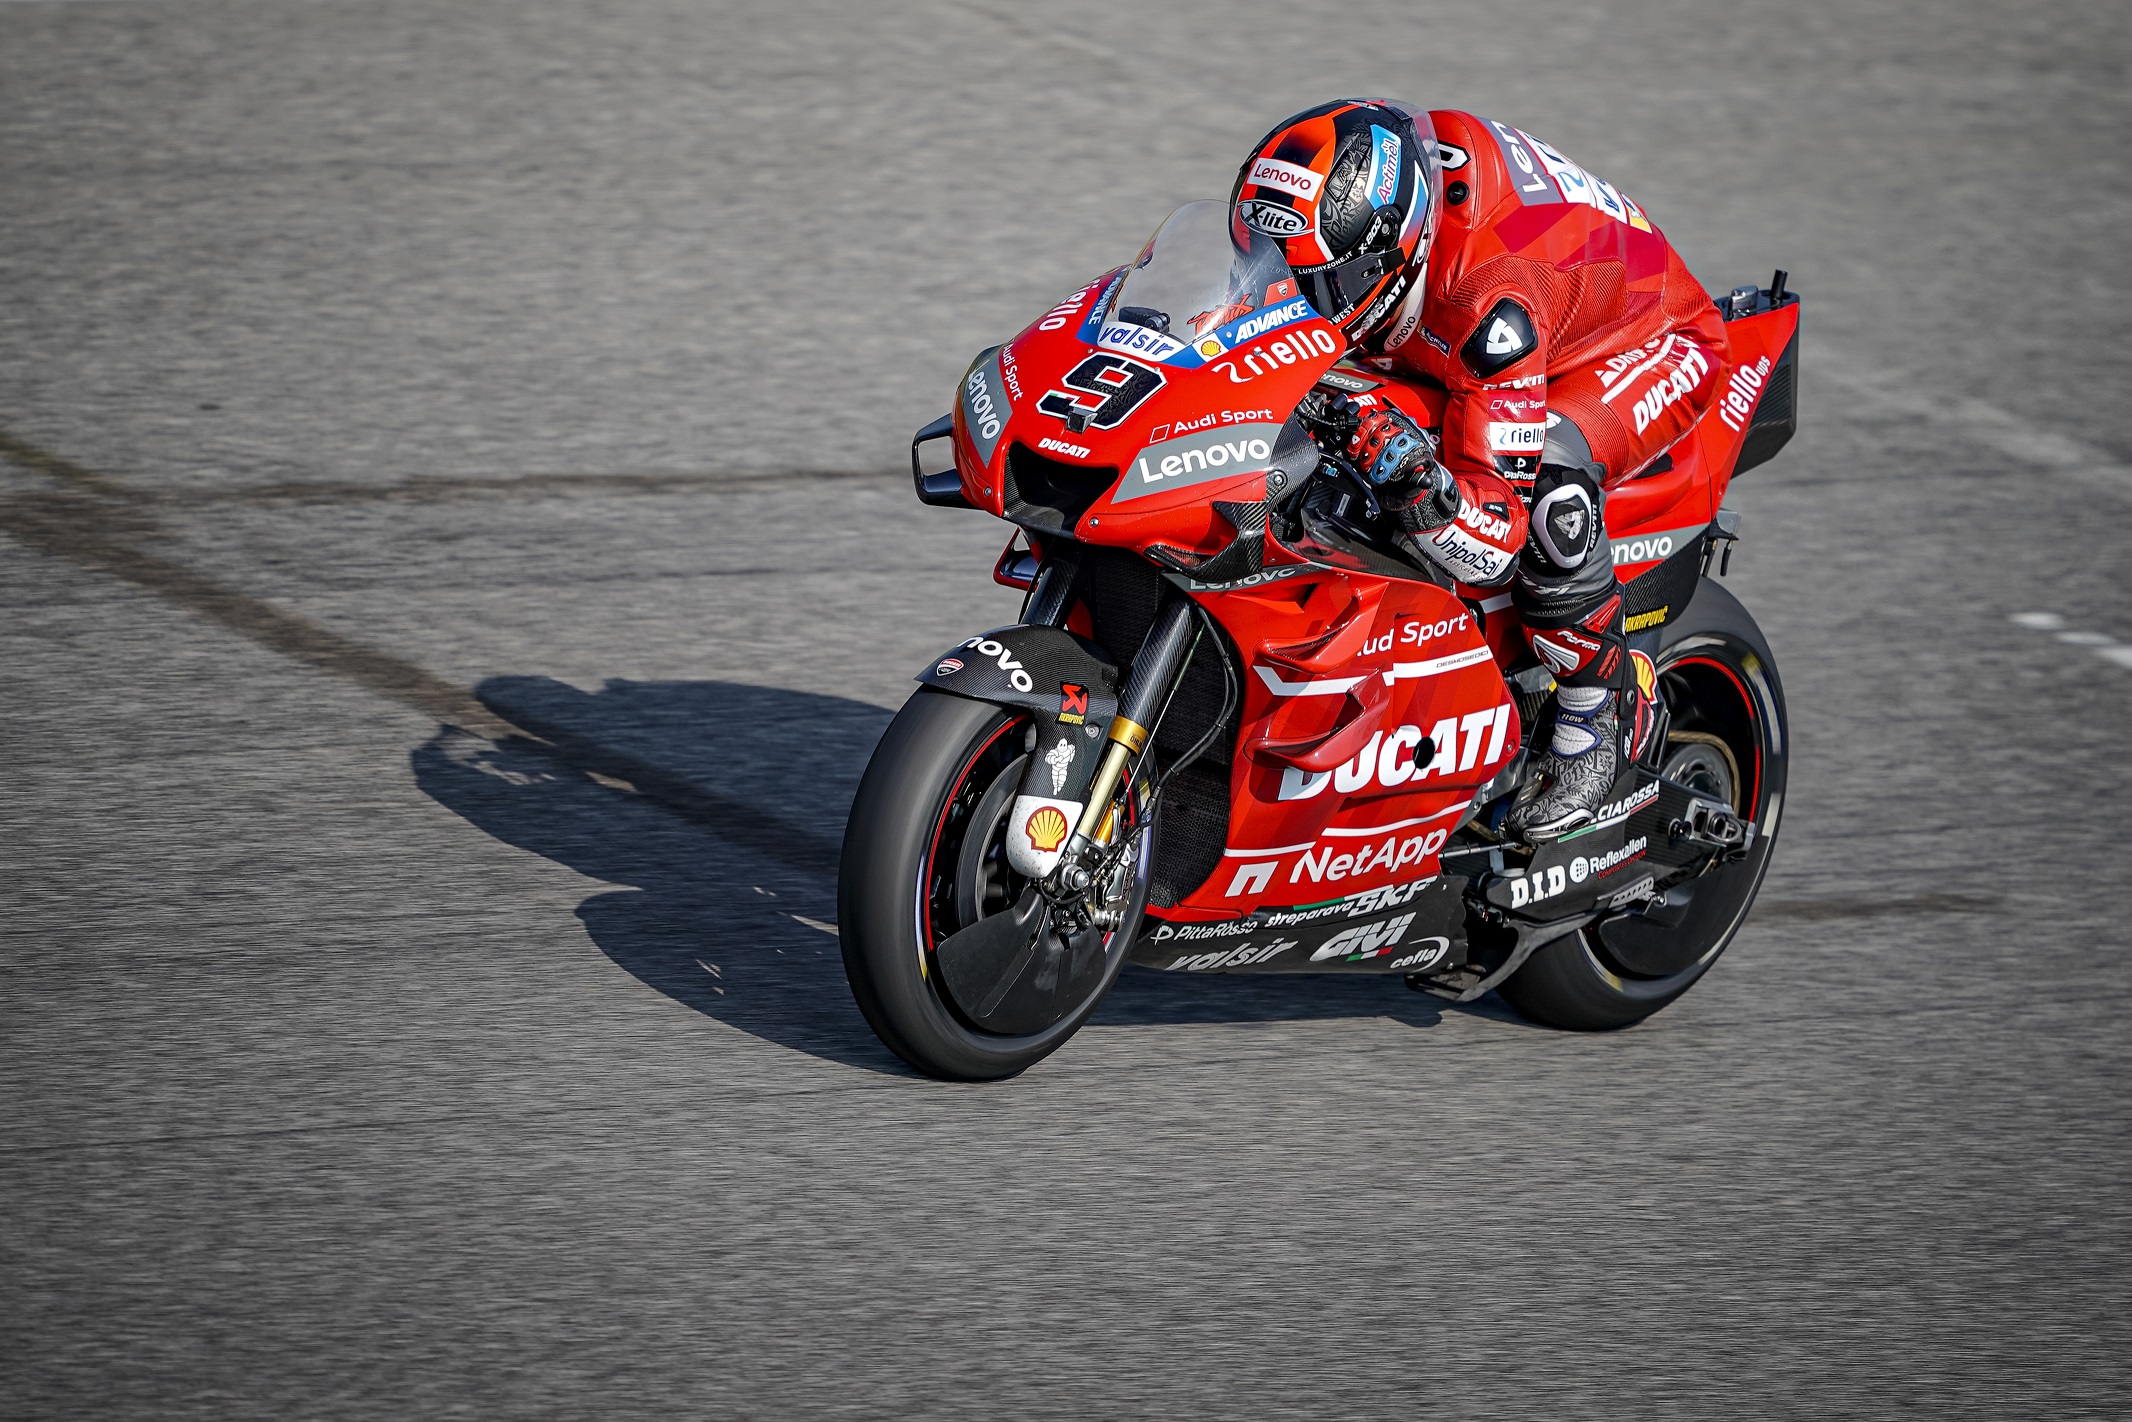 Michele Pirro-Ducati Test Team rider-uae-dubai